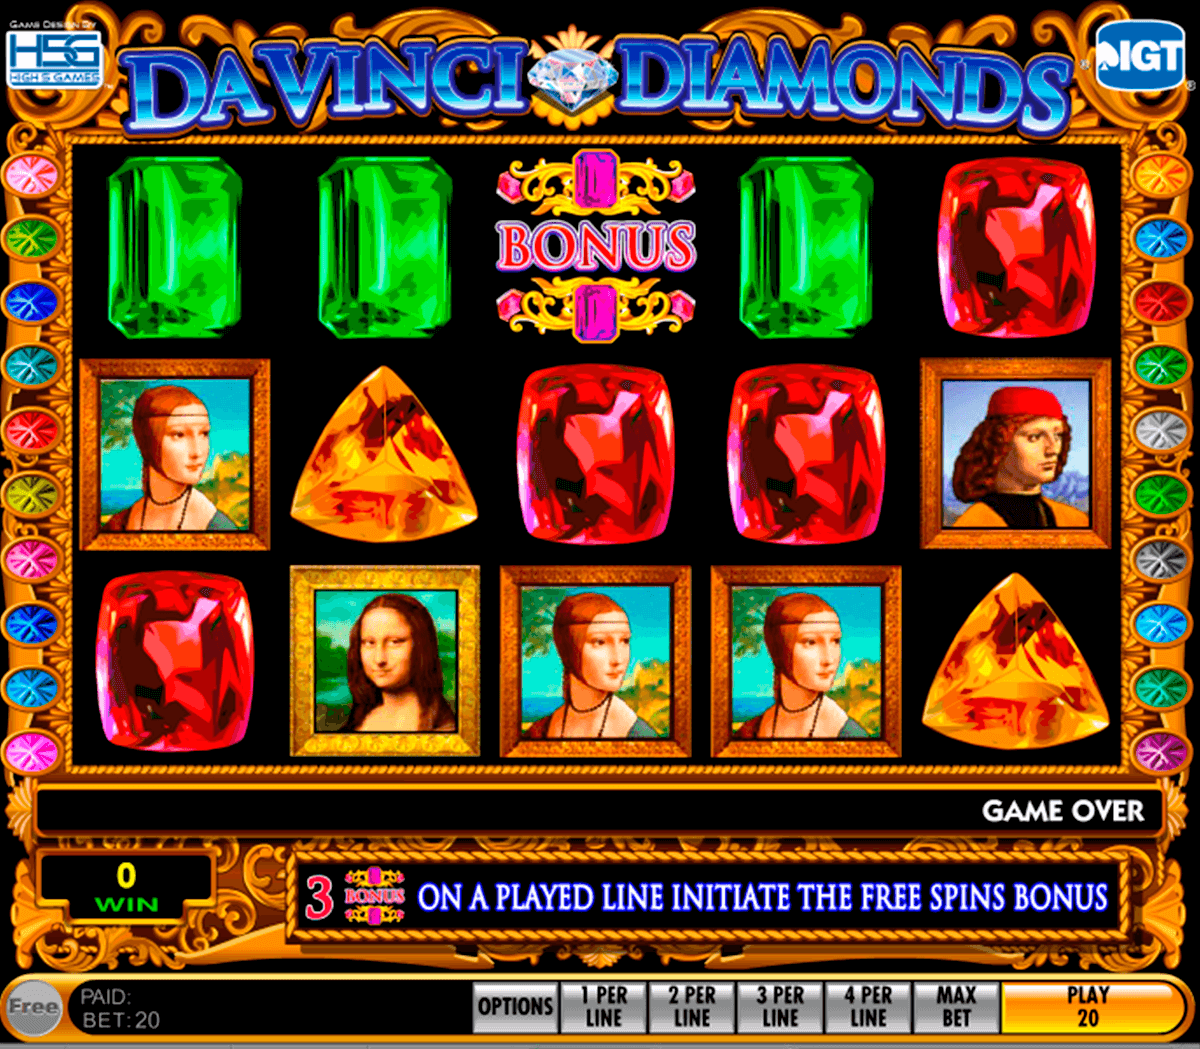 Davinci Diamonds Free Slot Game